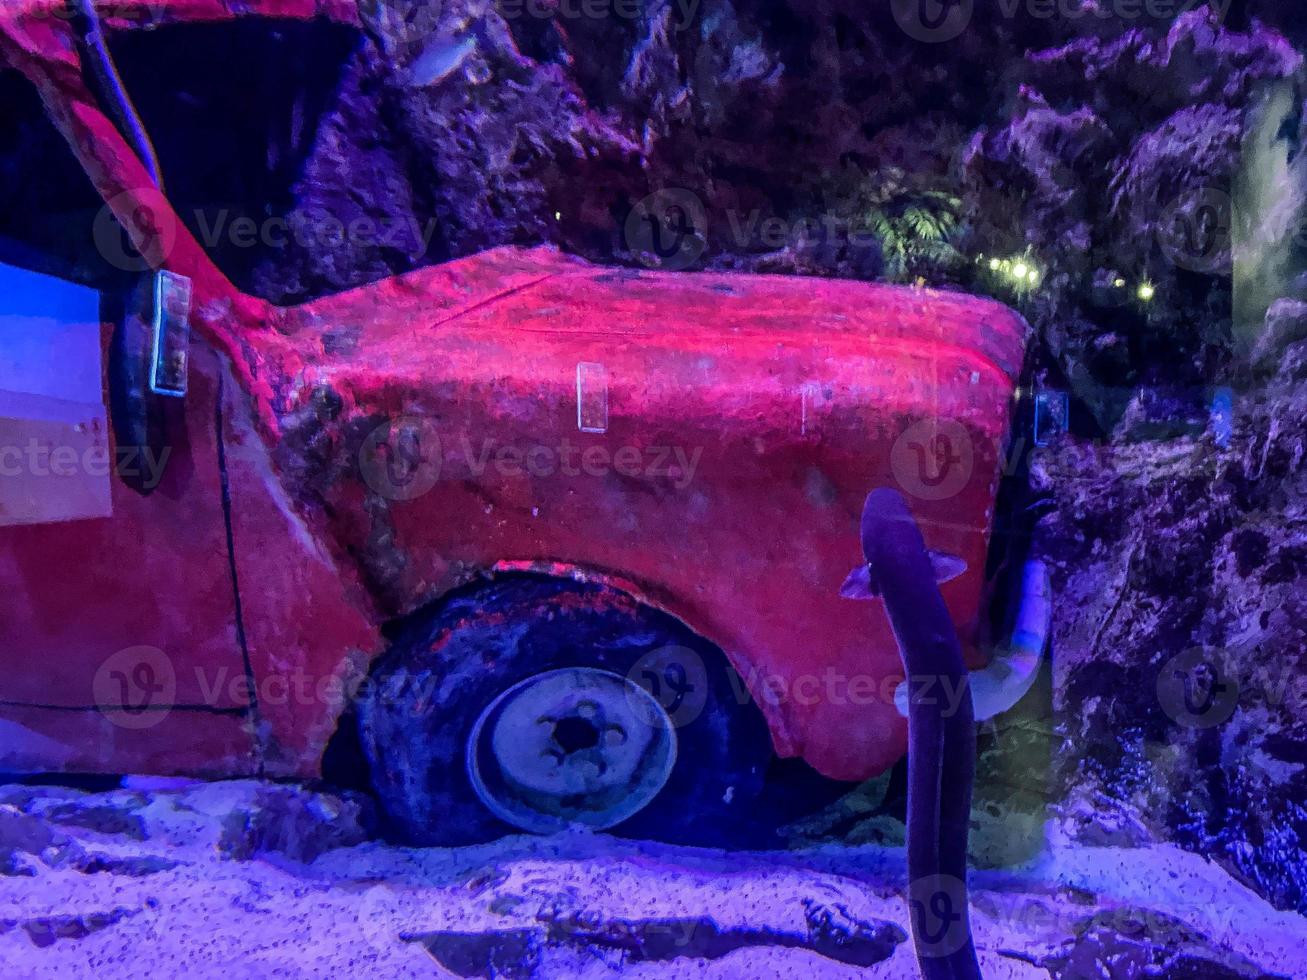 coche rojo brillante se hundió en el fondo del mar. techo y ruedas con pintura agrietada por estar en el agua. cerca de anguilas, peces, piedras y matorrales foto